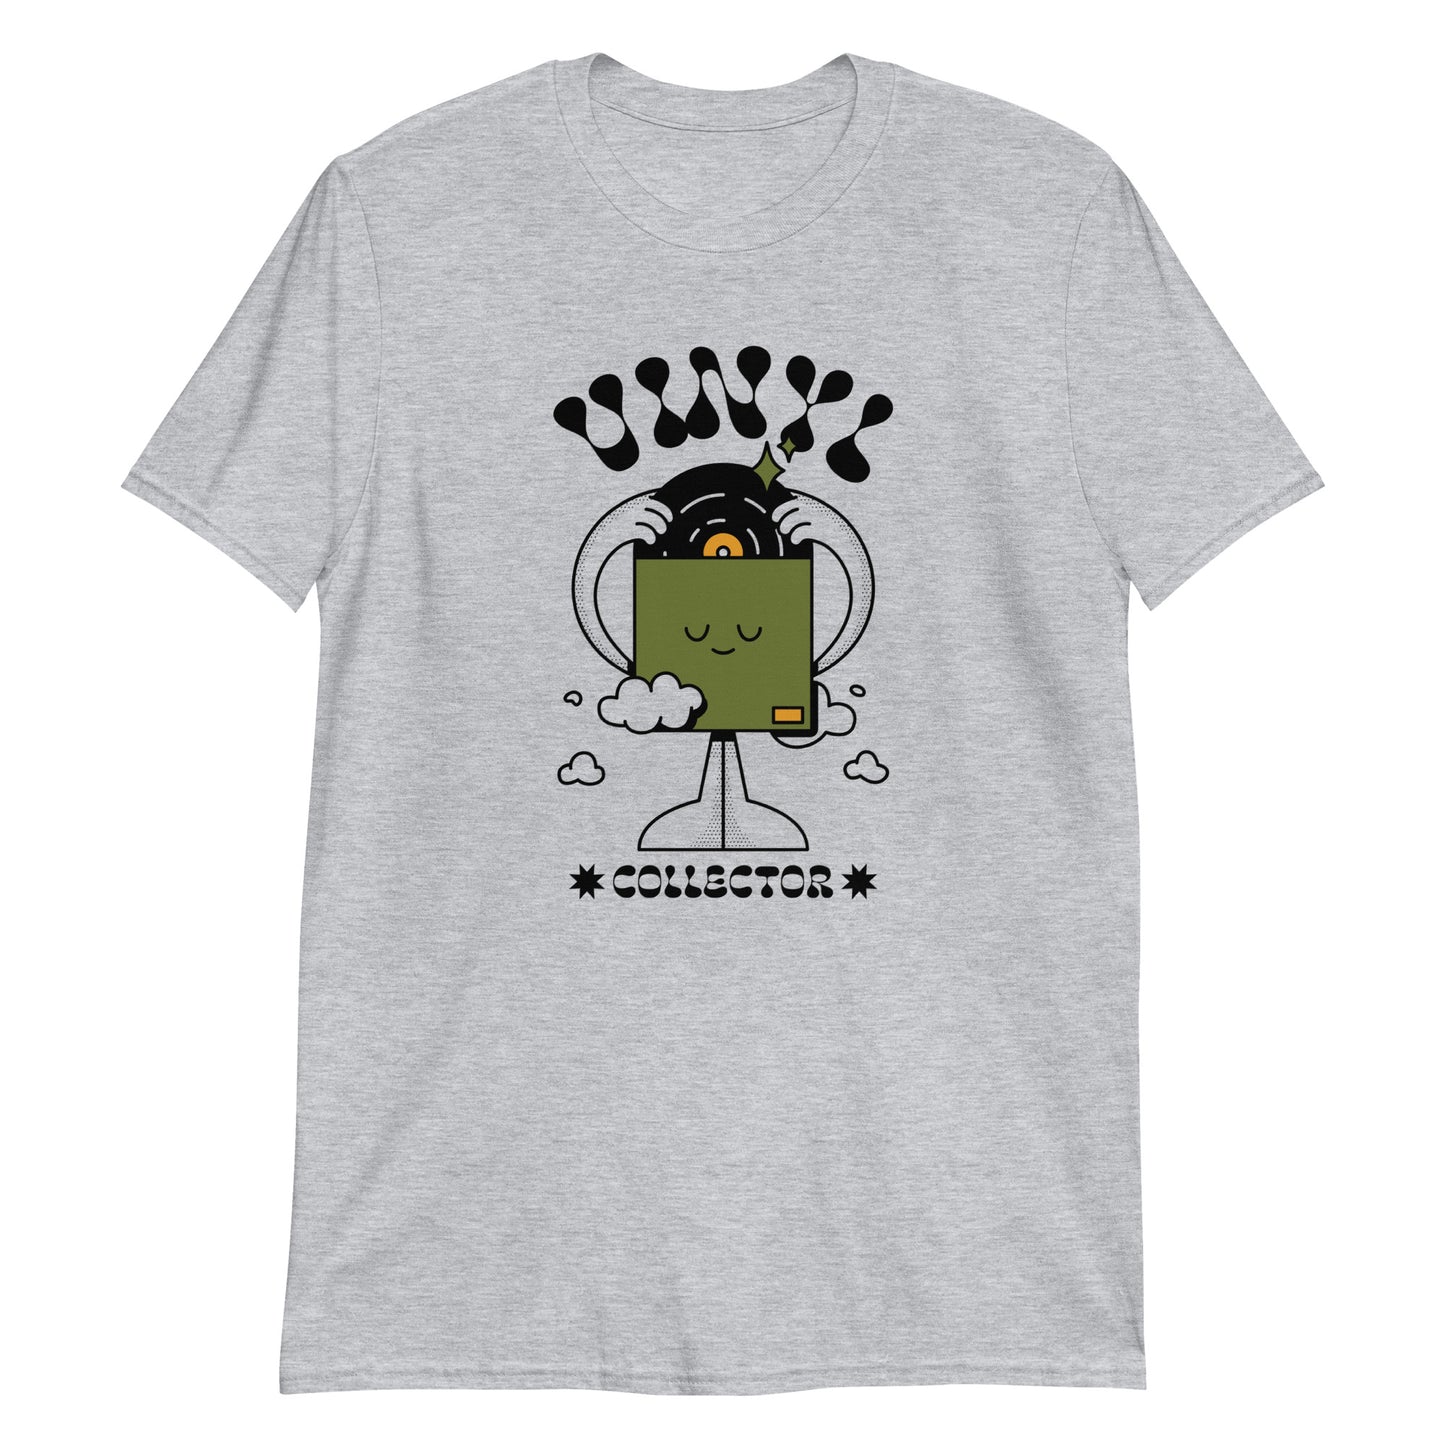 Vinyl Collector - Short-Sleeve Unisex T-Shirt Sport Grey Unisex T-shirt Music